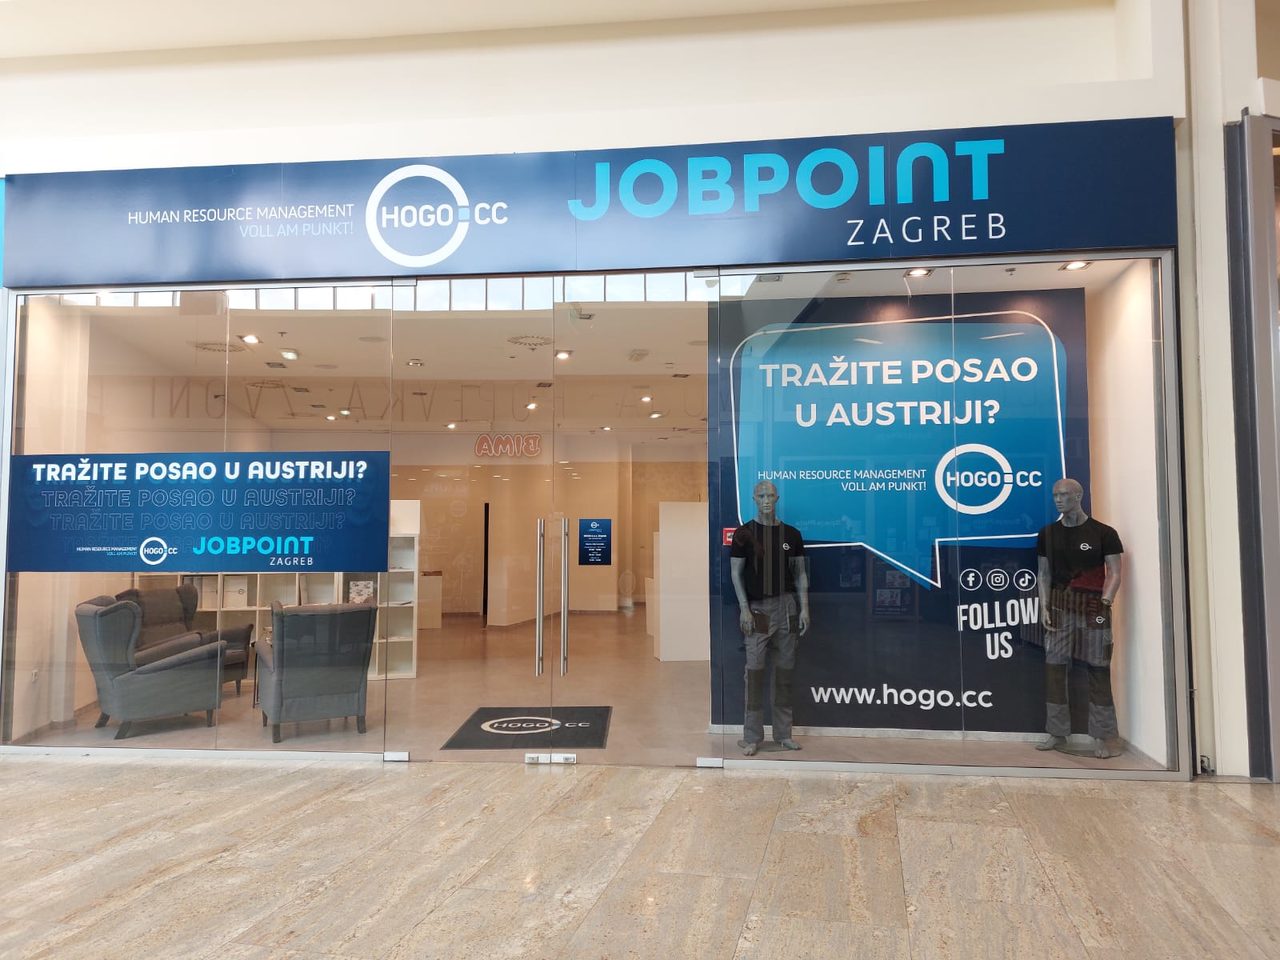 HOGO_Jobpoint Zagreb.jpg